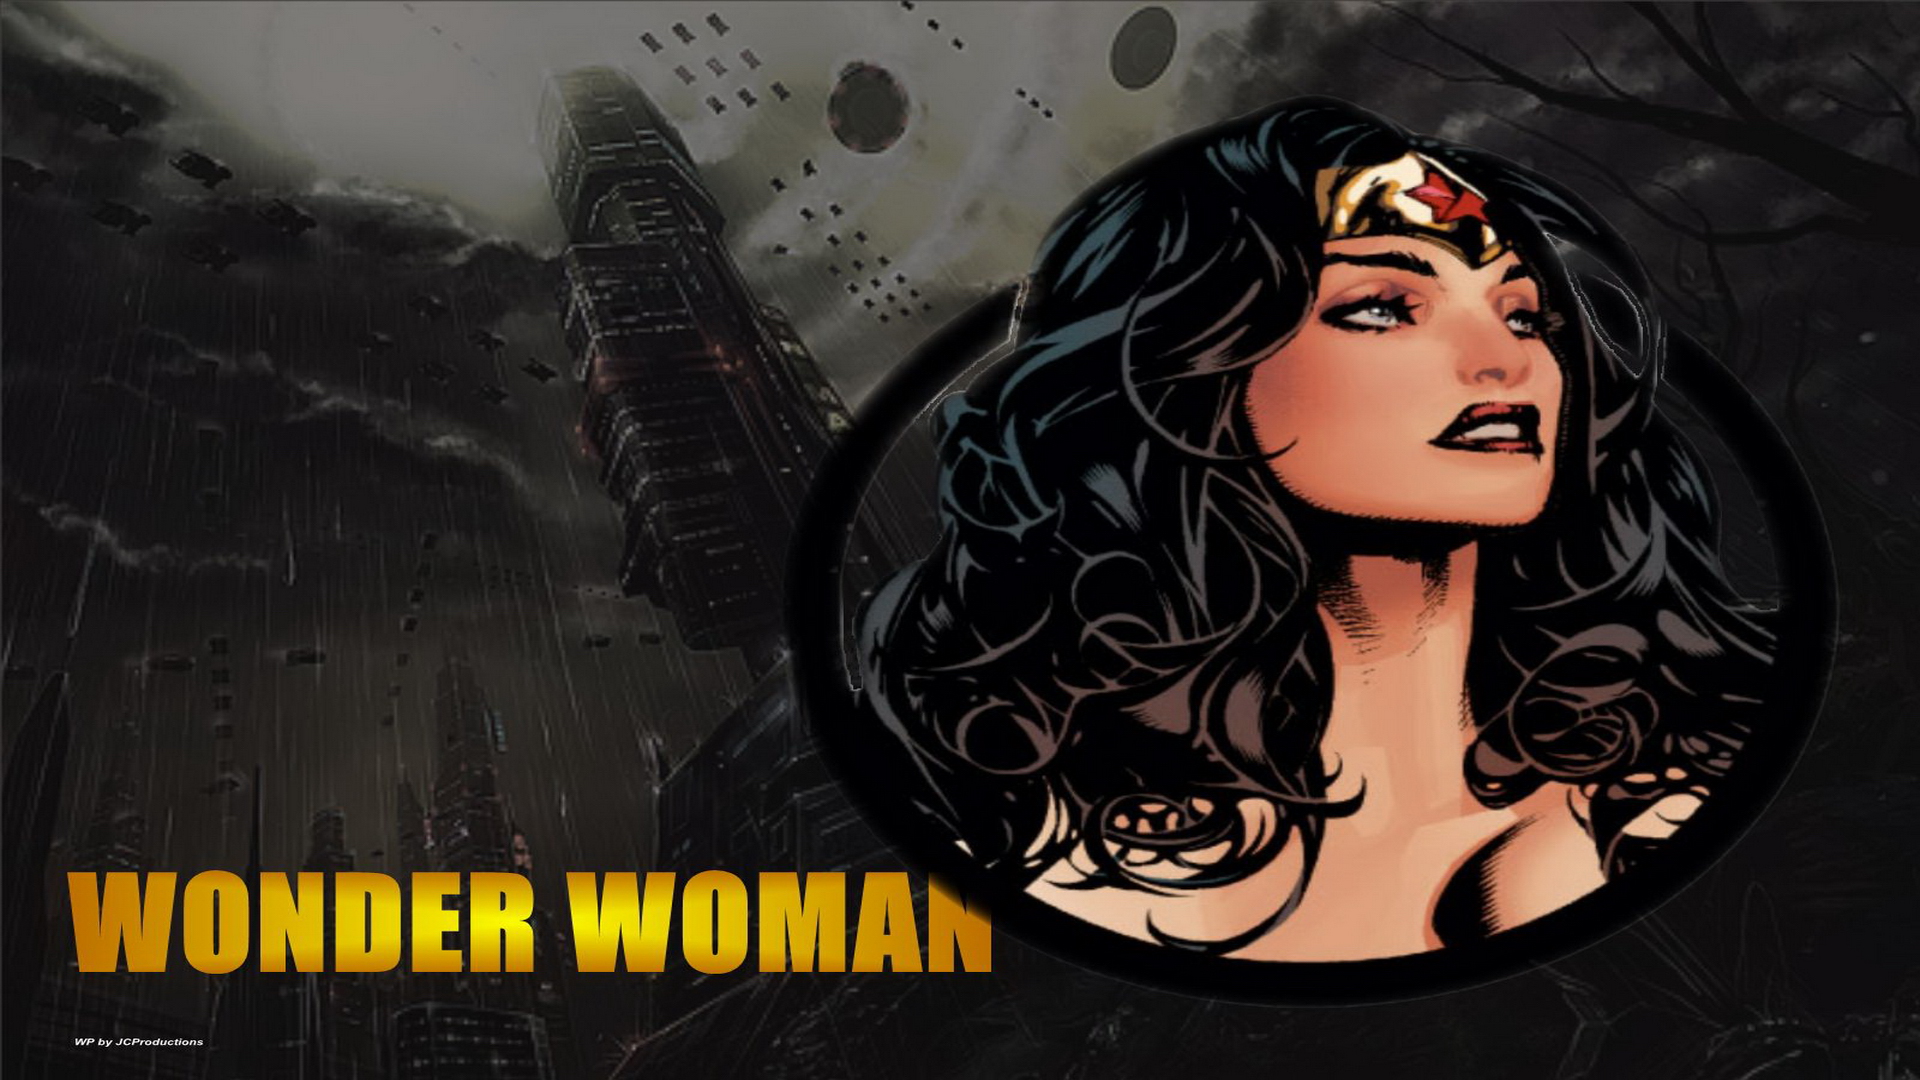 Wonder Woman dc comics 27027006 1600 1200jpg